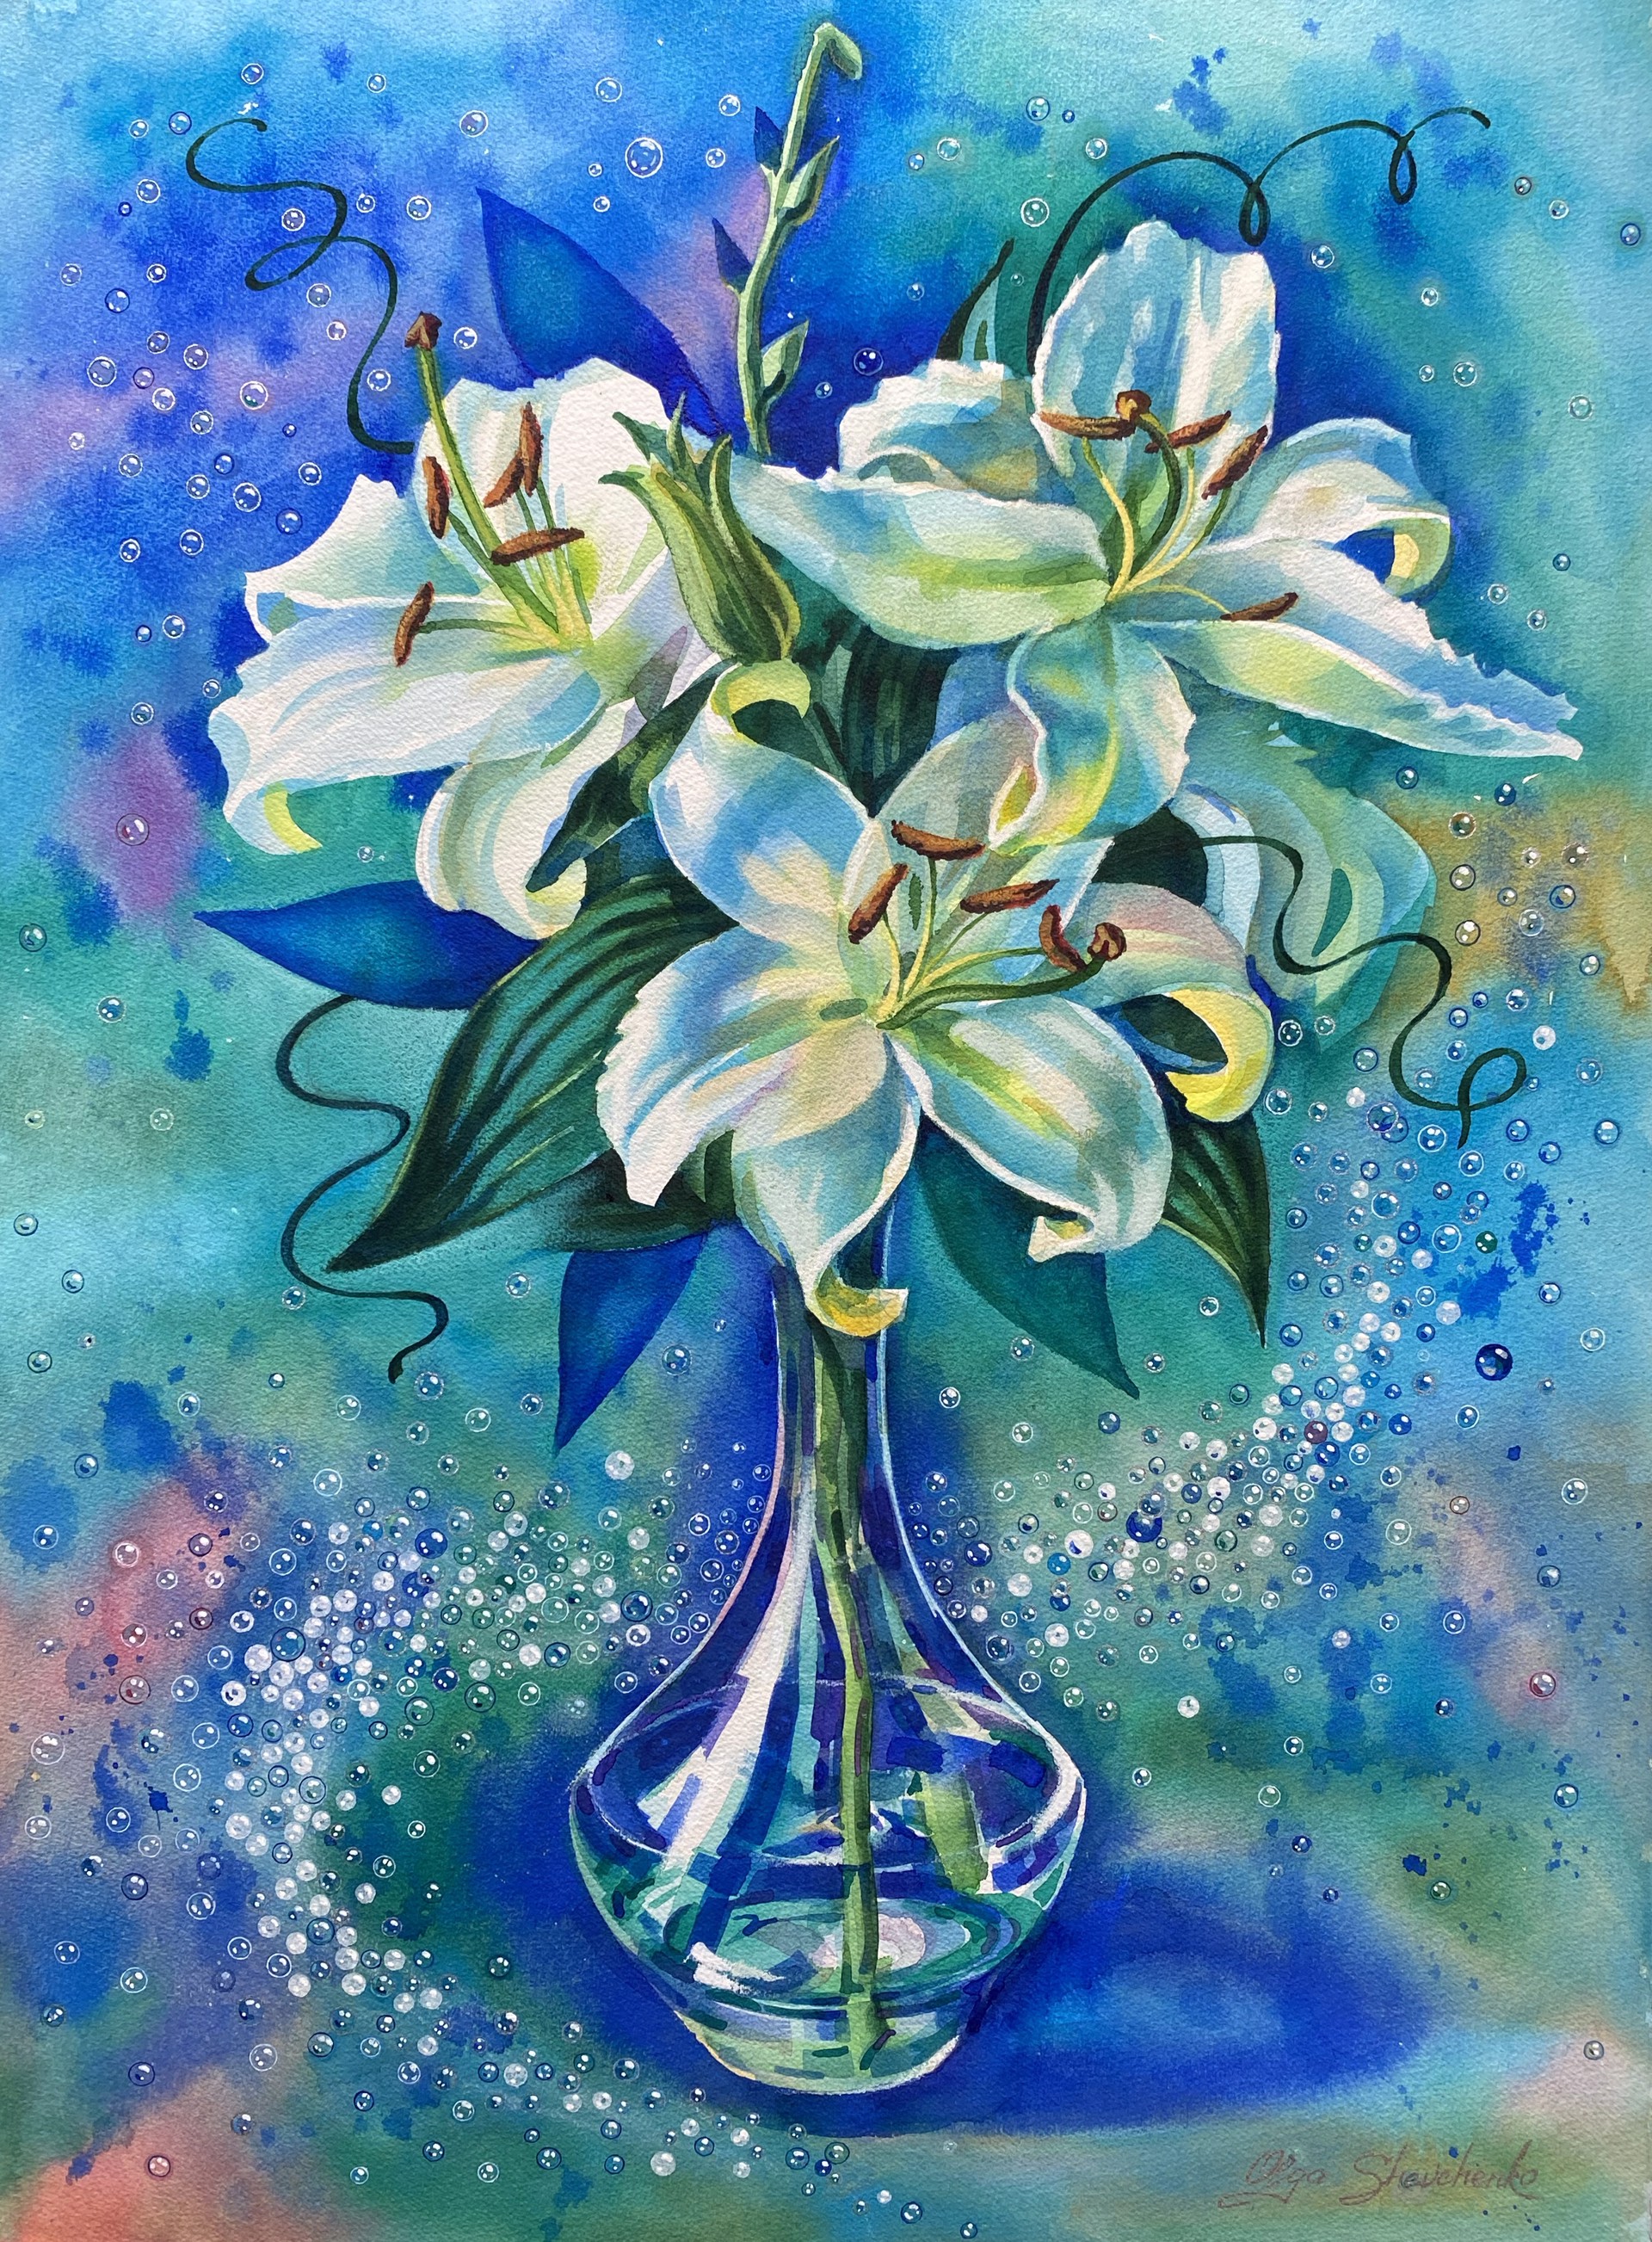 White Lilies by Olga Shevchenko